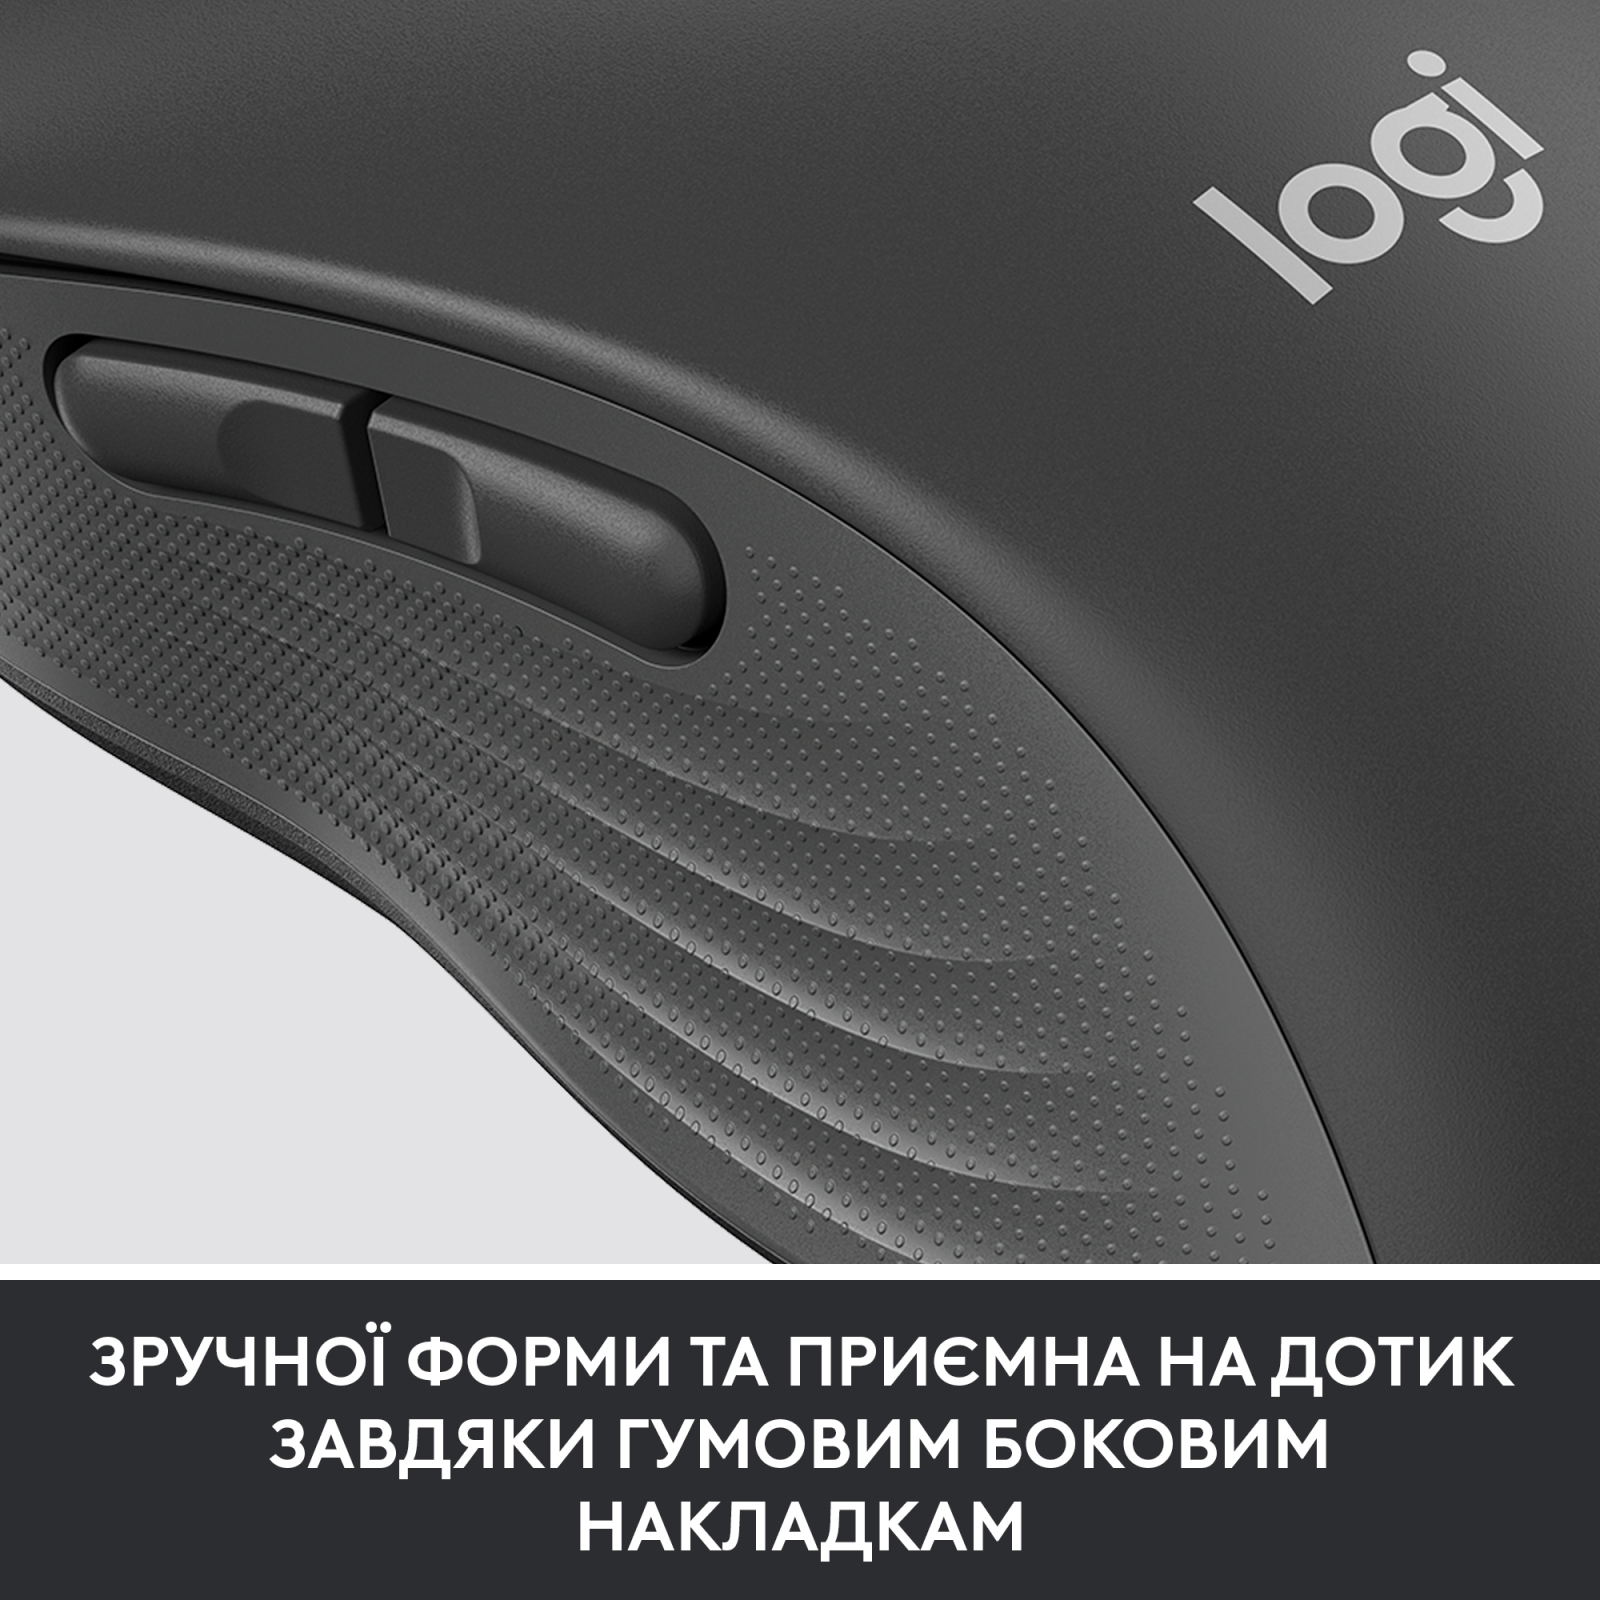 Мышка Logitech Signature M650 Wireless for Business Graphite (910-006274) изображение 8